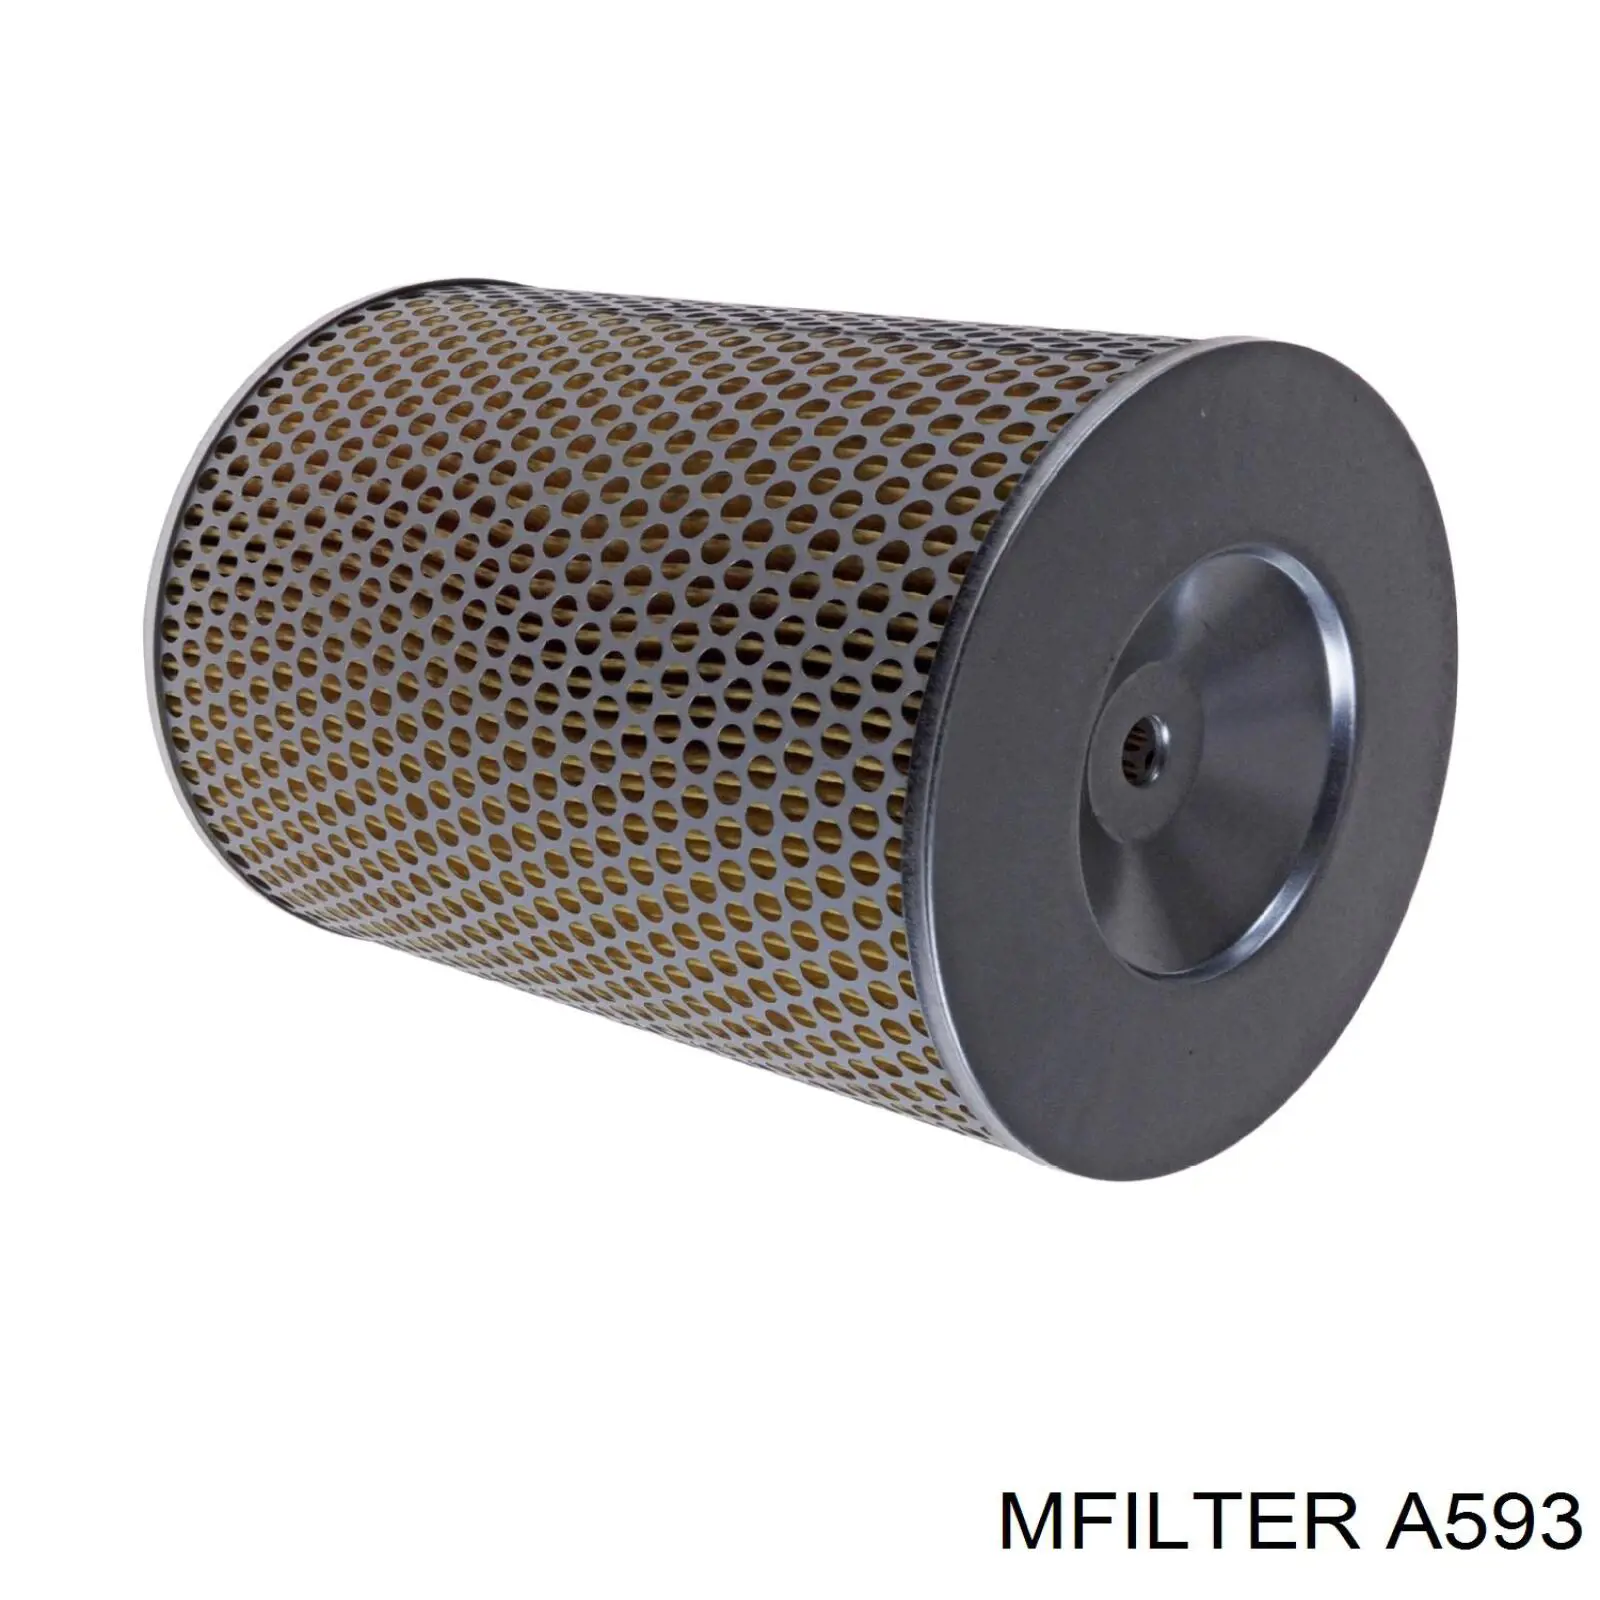 A 593 Mfilter воздушный фильтр